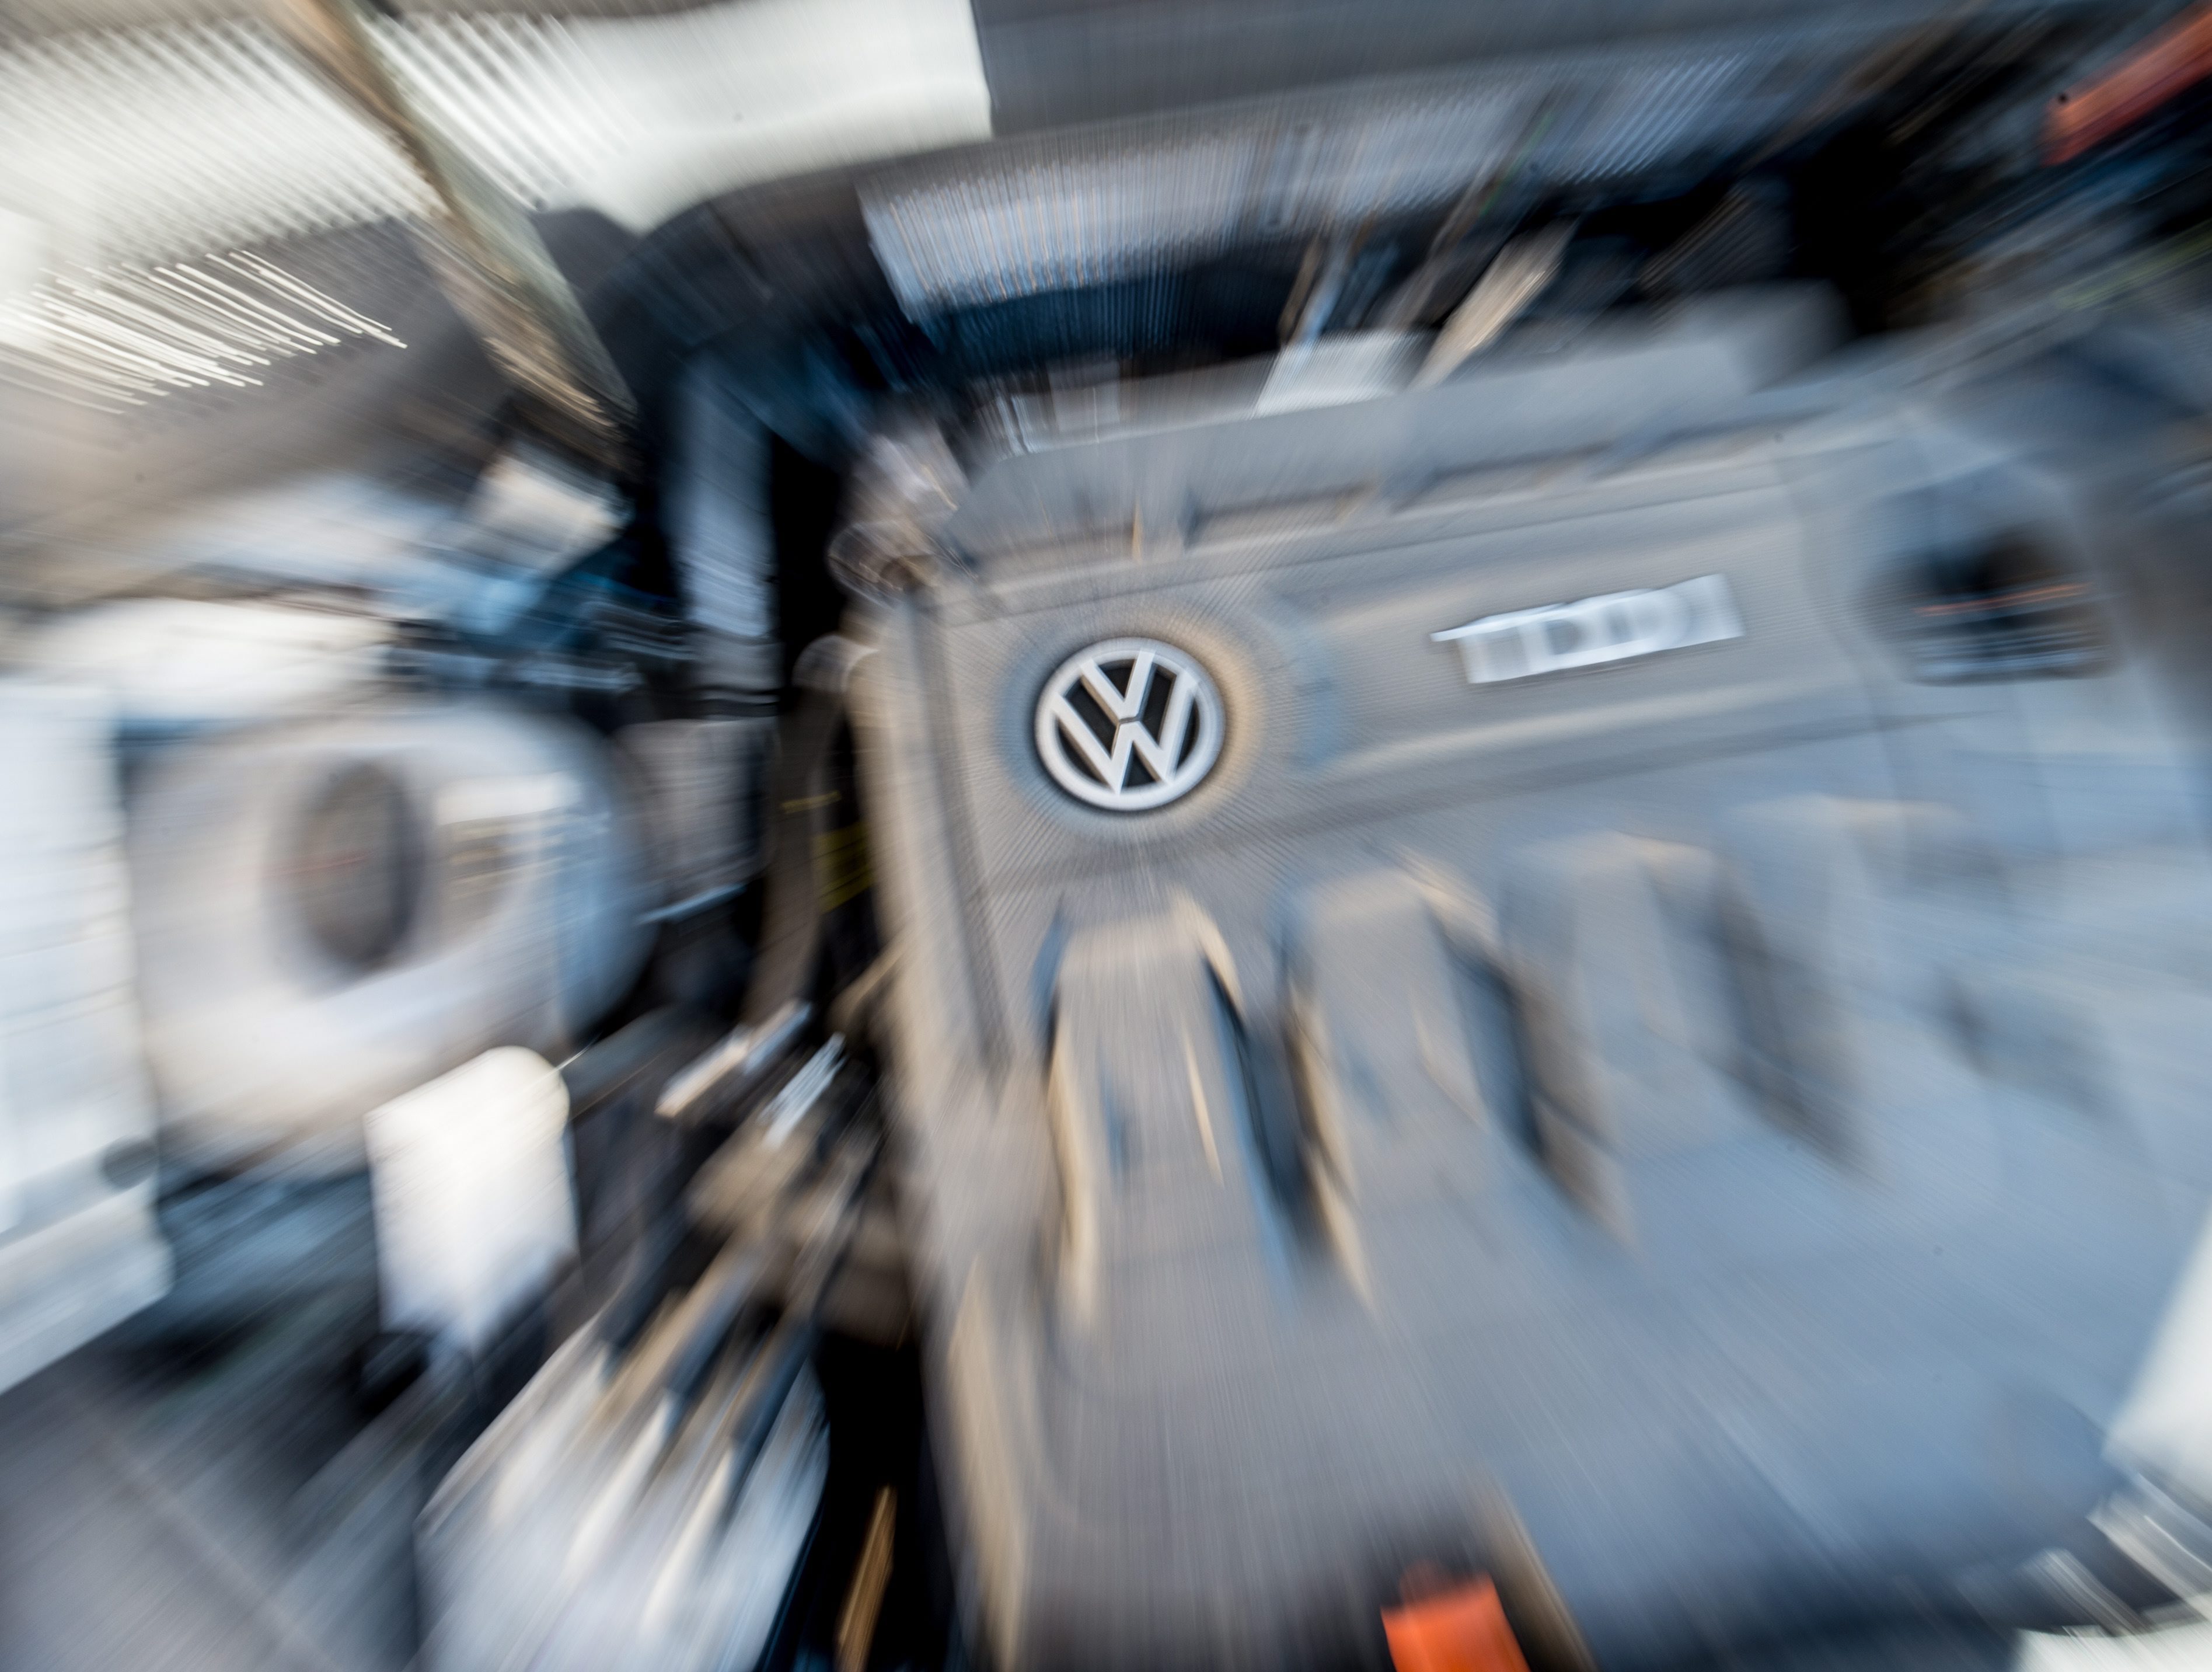 Αυξάνεται ο αριθμός των αγορών όπου αναστέλλονται οι πωλήσεις των «ύποπτων» πετρελαιοκίνητων του ομίλου VW